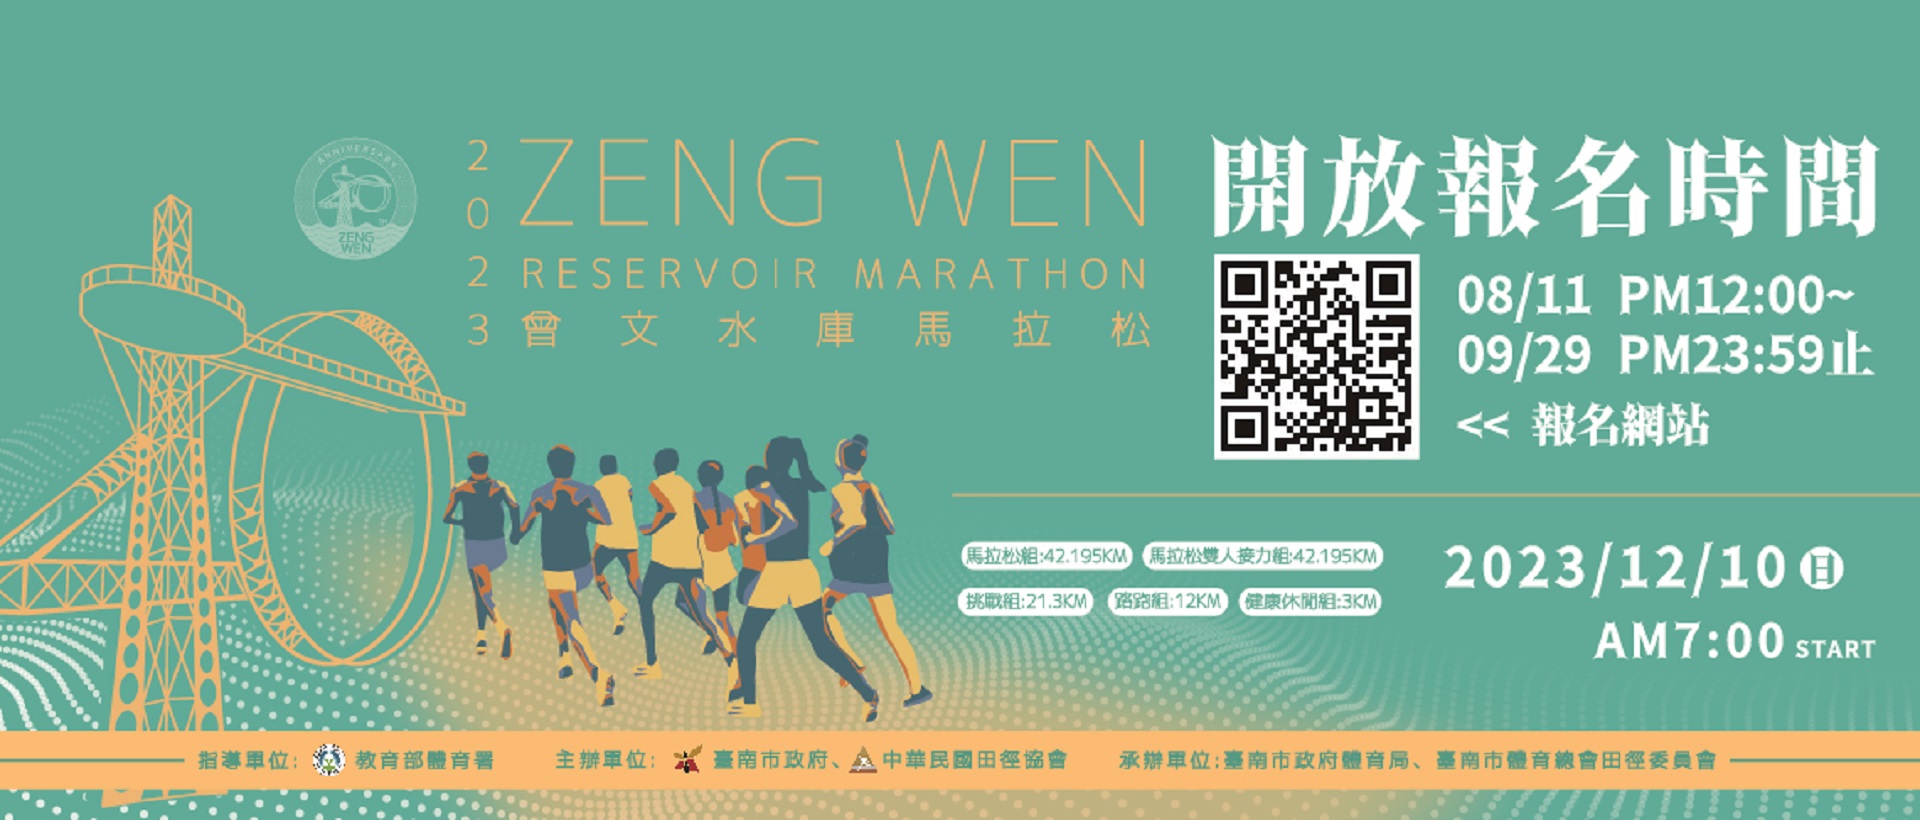 曾文水庫馬拉松12/10舉行，開放報名至9 /29，詳臺南市政府體育局官網。